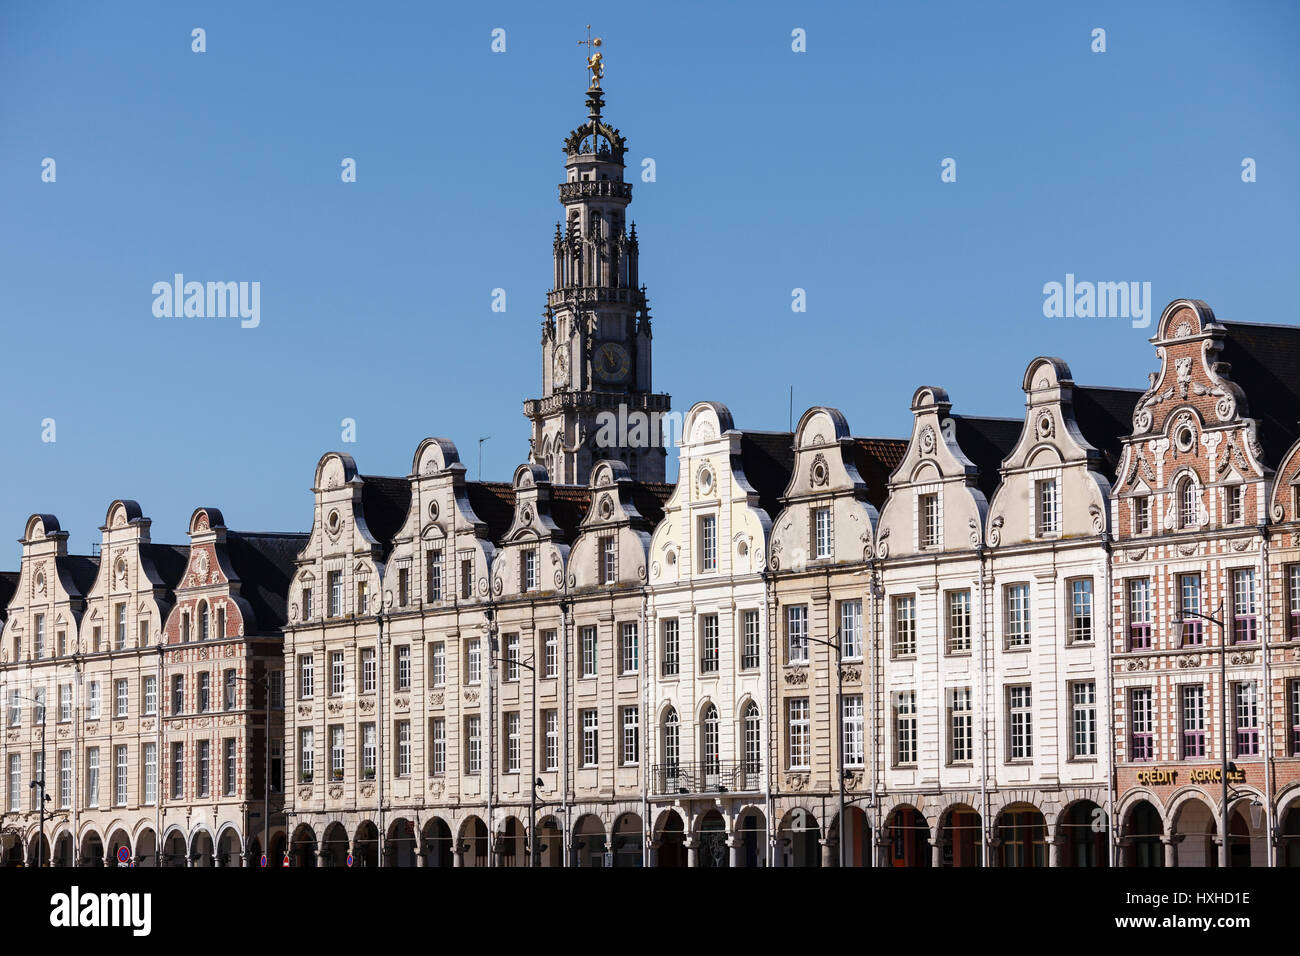 Las fachadas de estilo barroco flamenco en la Grand Place, Arras, Pas-de-Calais, Francia Foto de stock